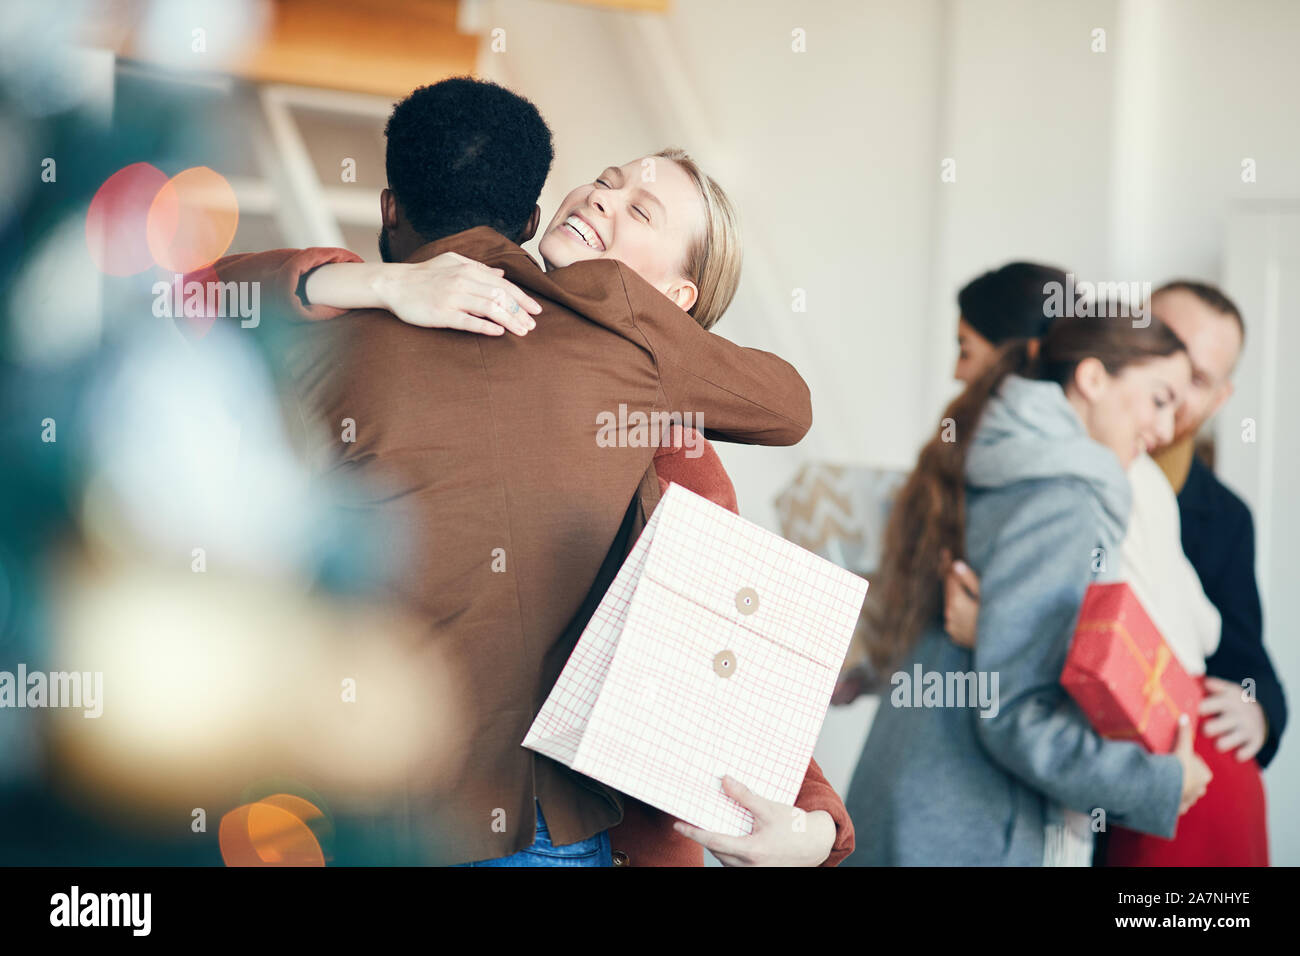 Gruppe der modernen jungen Menschen den Austausch von Geschenken während der Weihnachtsfeier, Fokus auf lächelnde Frau umarmen Freund im Vordergrund, Kopie Raum Stockfoto